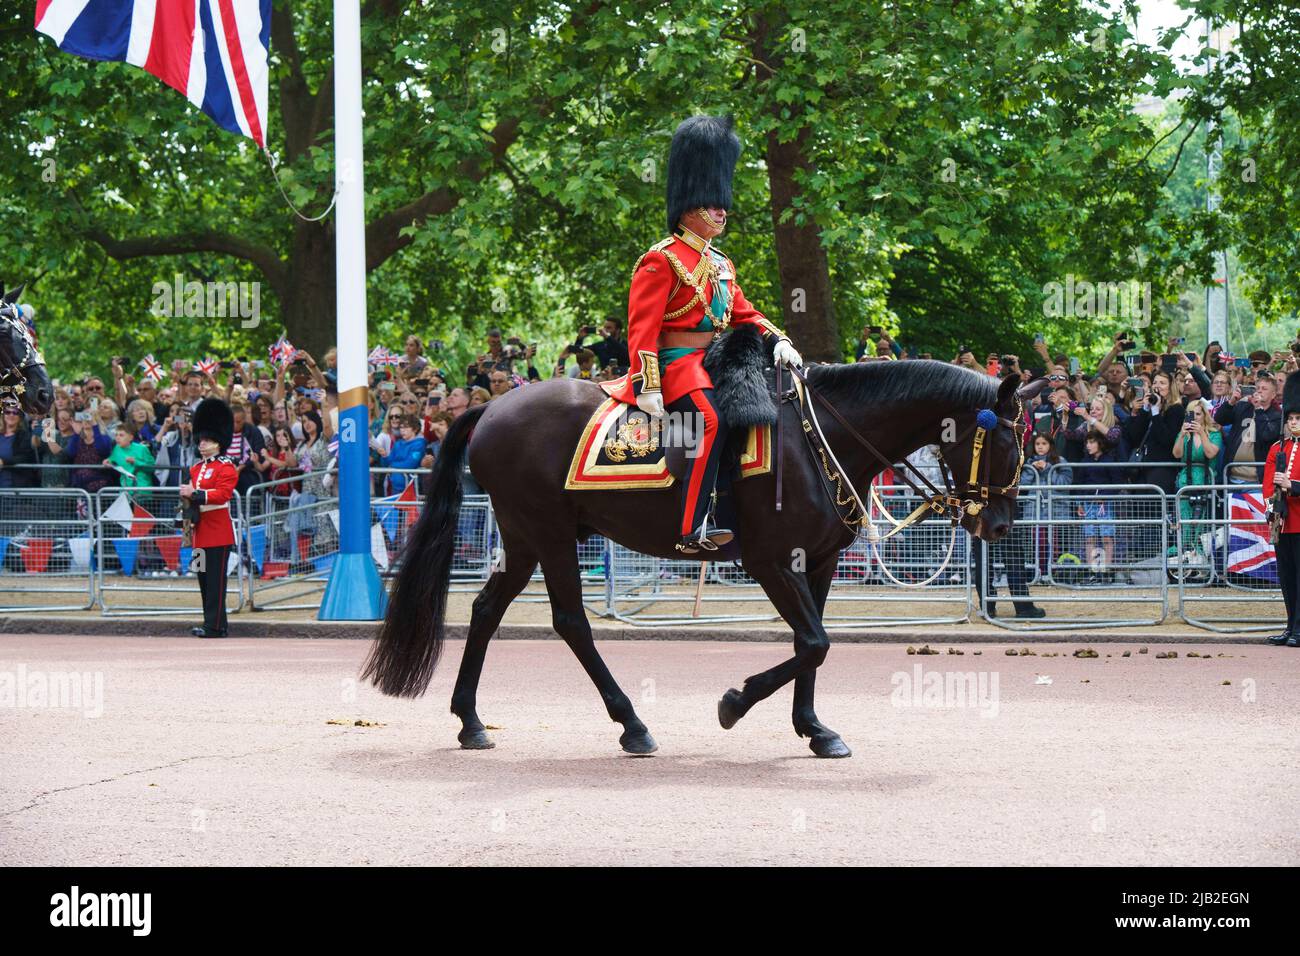 LONDRA - 2 GIUGNO: Prince Charles, il Principe del Galles, corre lungo il Mall, alla cerimonia Trooping the Color il 2 giugno 2022 nel centro di Londra. Foto di David Levenson Credit: David Levenson/Alamy Live News Foto Stock